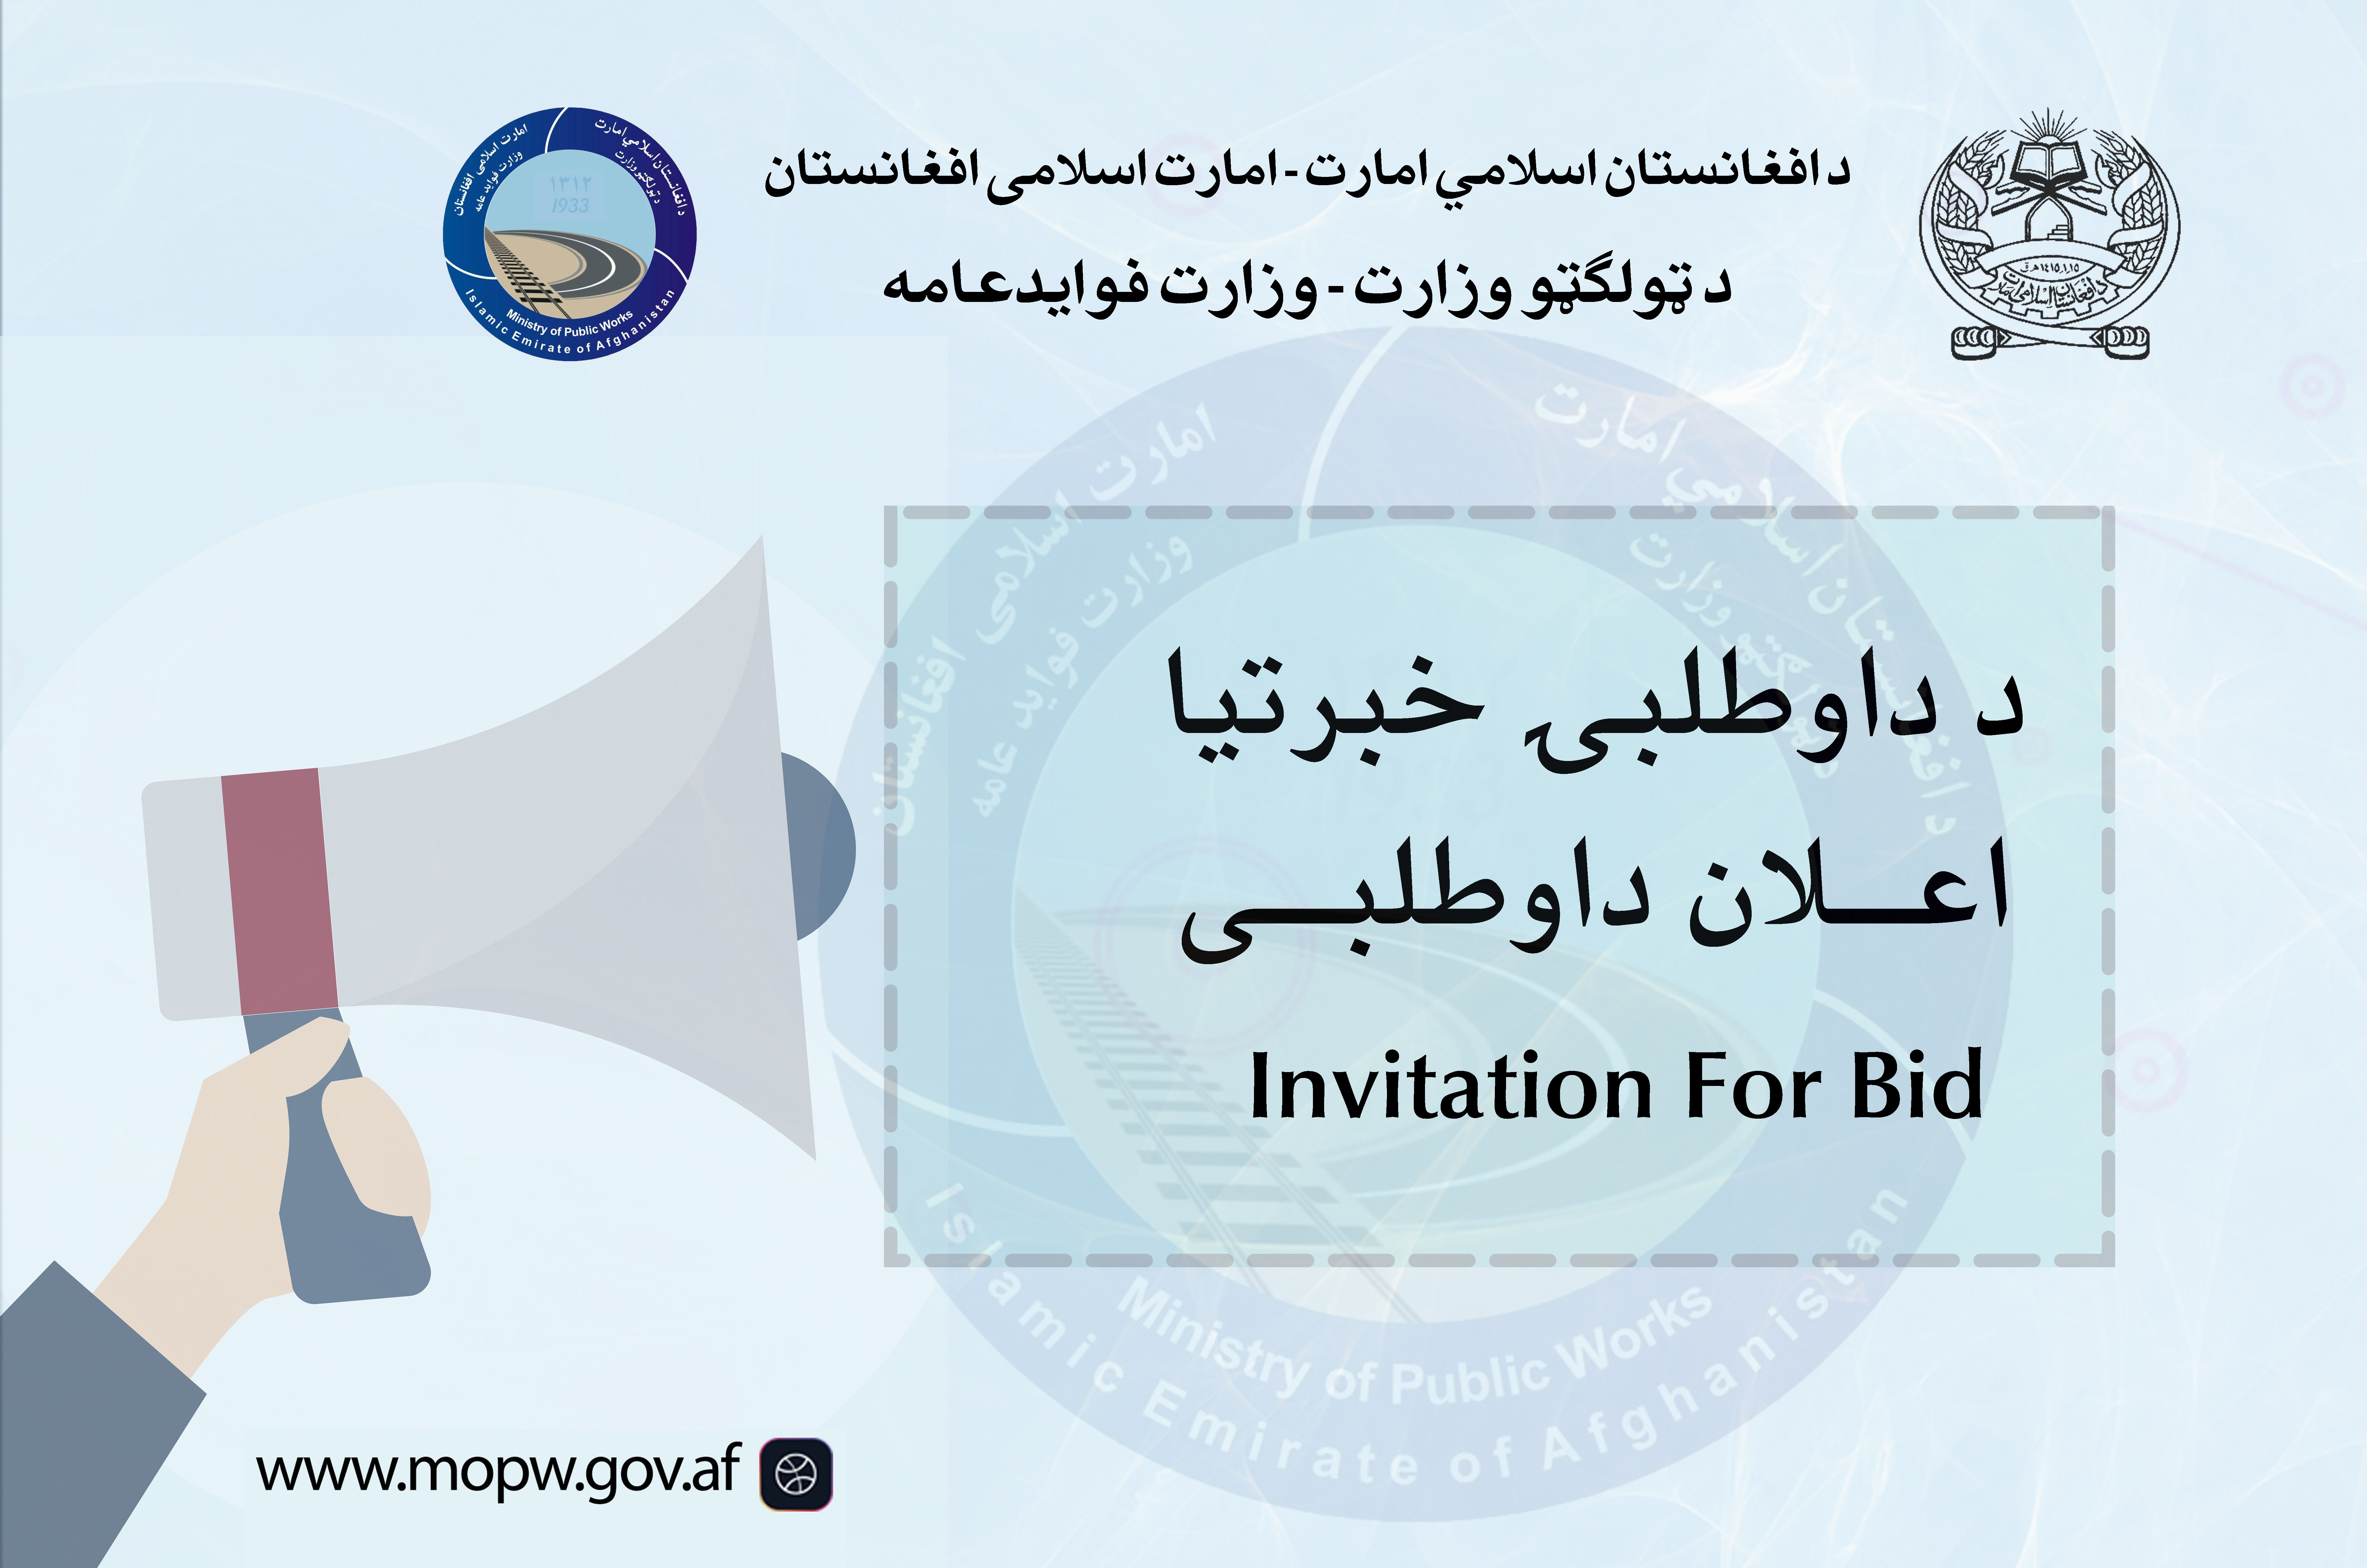  اعلان دعوت به داوطلبی پروژه ساختمان مجدد پل ساحه عظمت واقع مسیر شاهراه عمومی کابل-کندهار